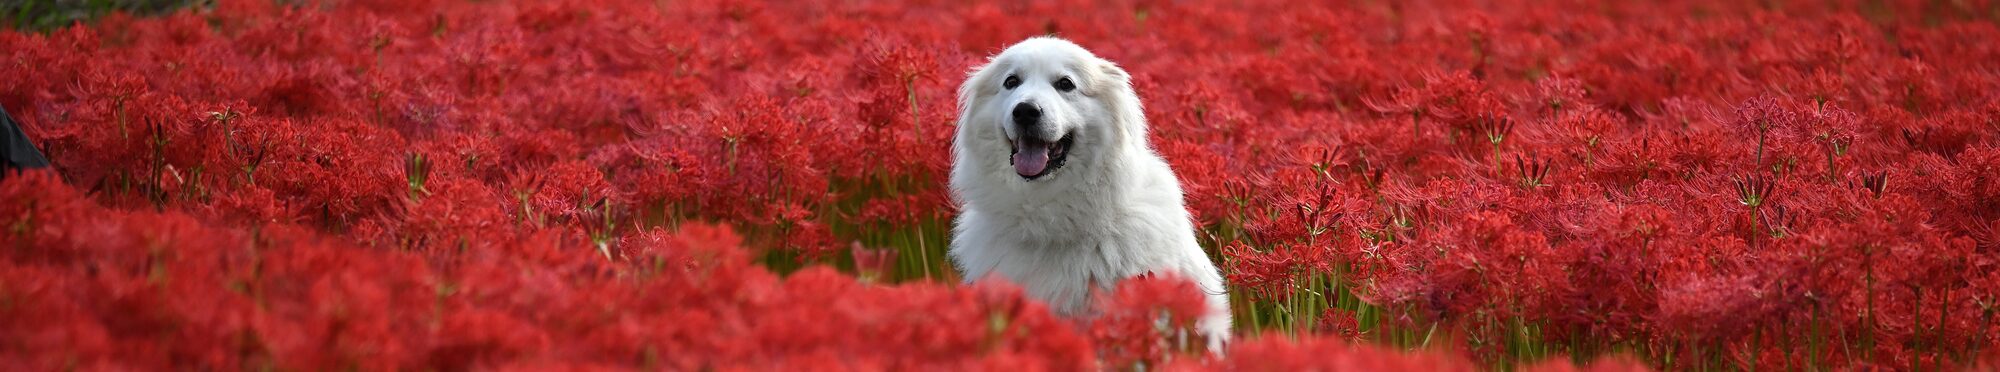 Weißer Hund in roten Blumen